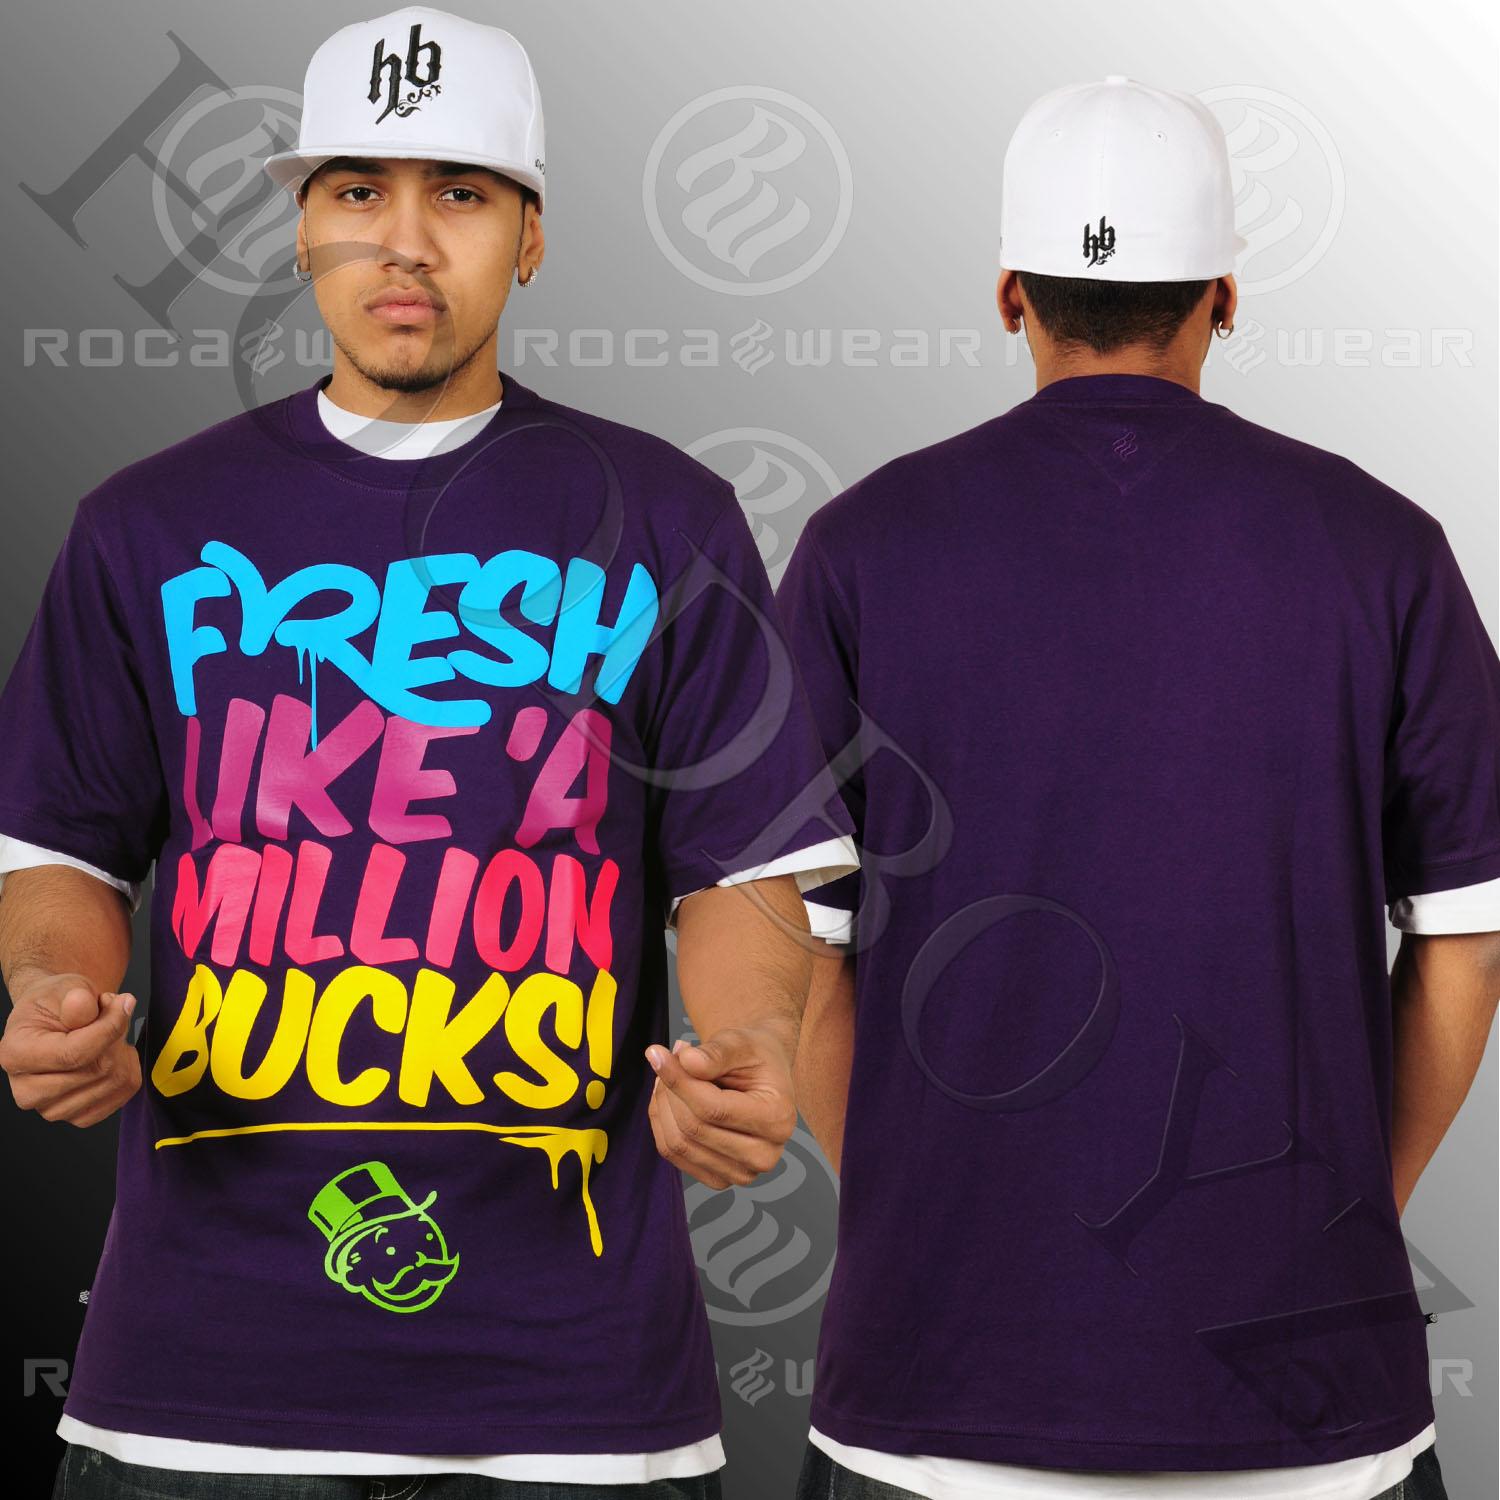 Foto Rocawear Bucks Camisetas Púrpura foto 265688